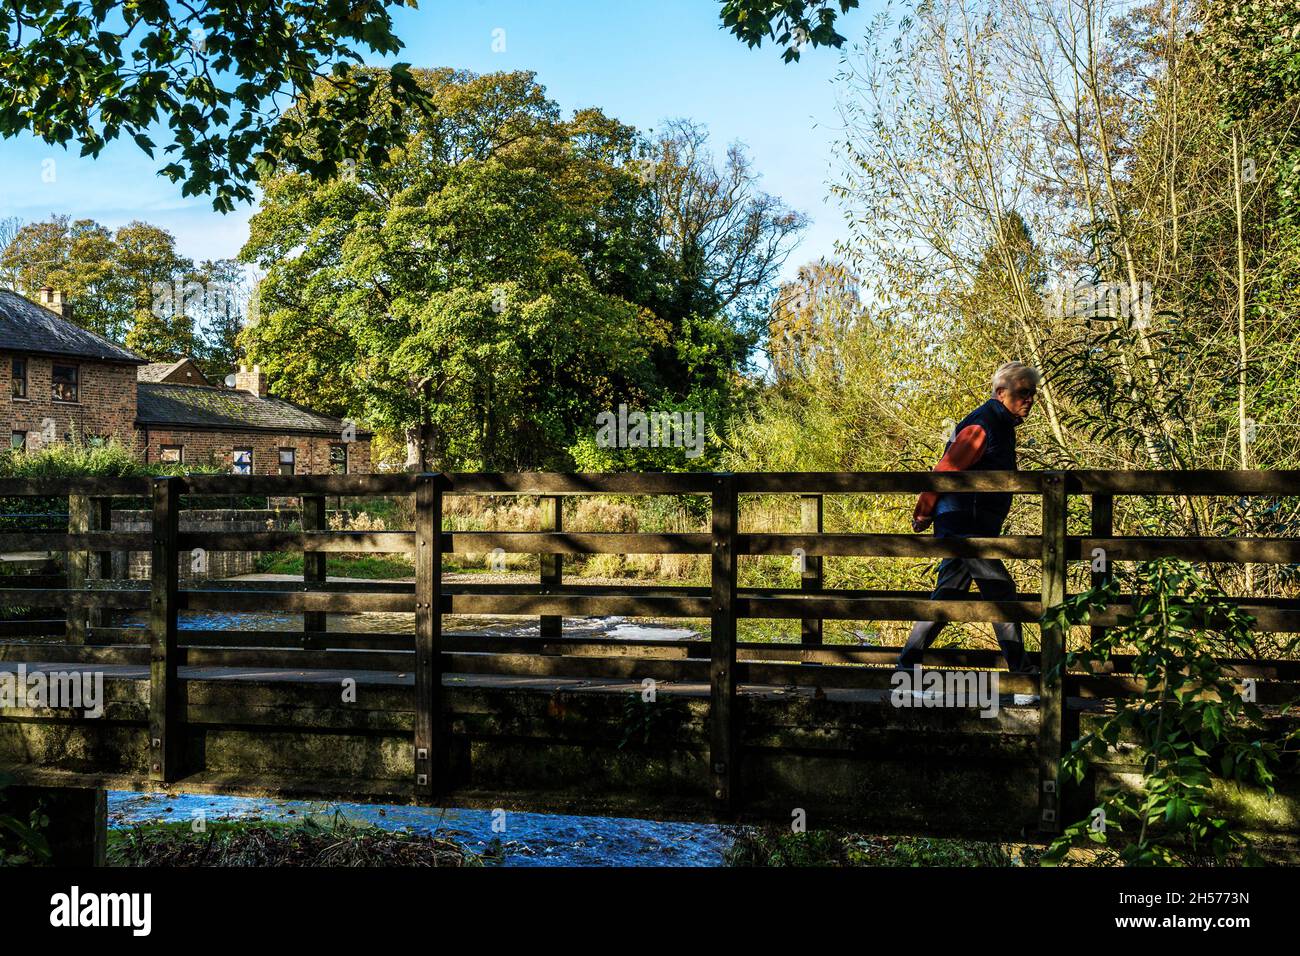 Ponte pedonale in legno sul fiume Skell con un uomo che lo attraversa con alberi colorati sullo sfondo in un giorno d'autunno, Ripon, Inghilterra, Regno Unito. Foto Stock